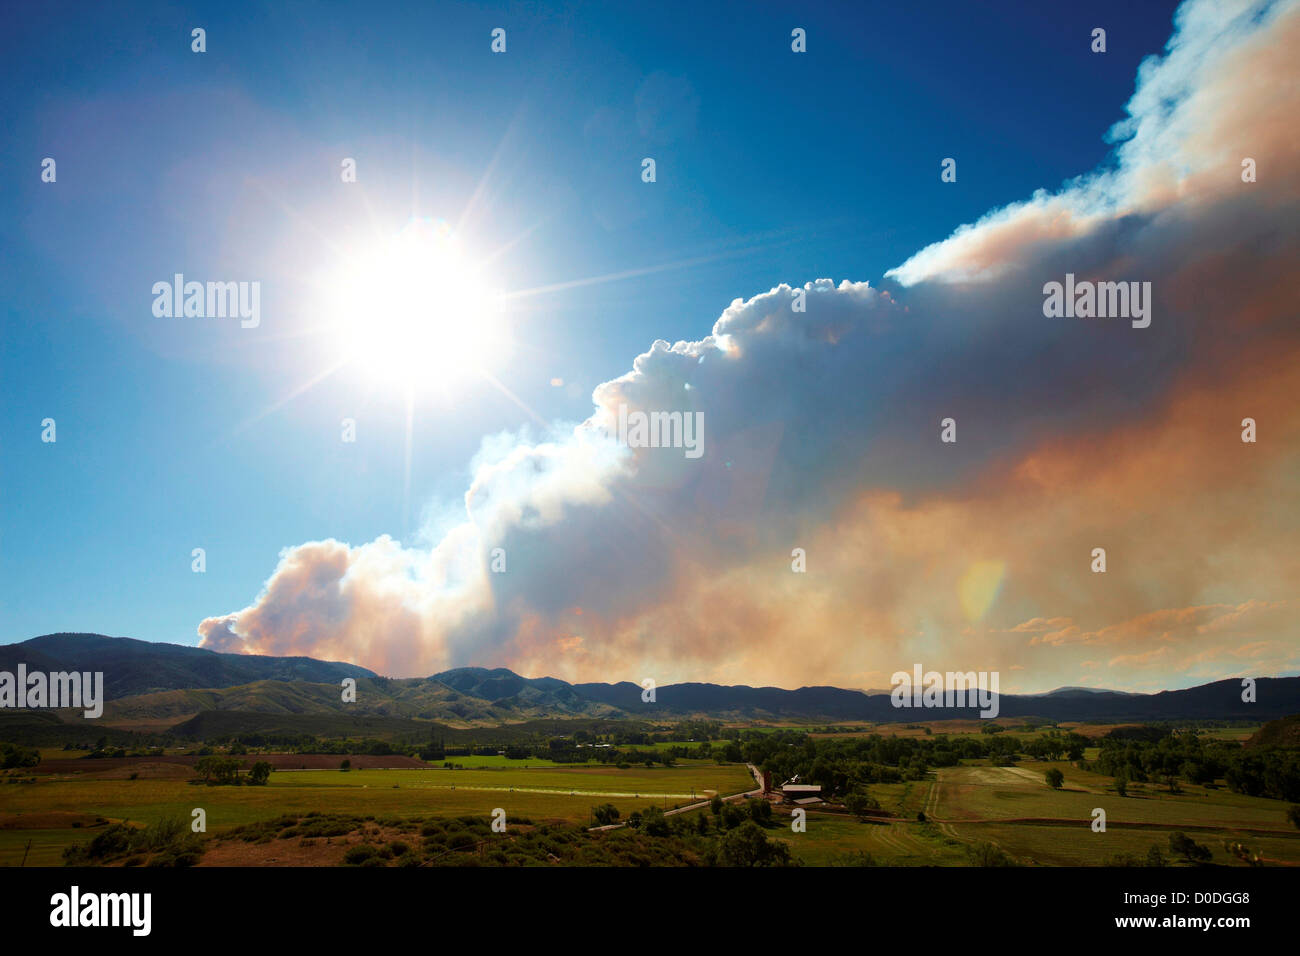 Panache de fumée s'élève de rage mountain wildfire, Colorado, USA Banque D'Images